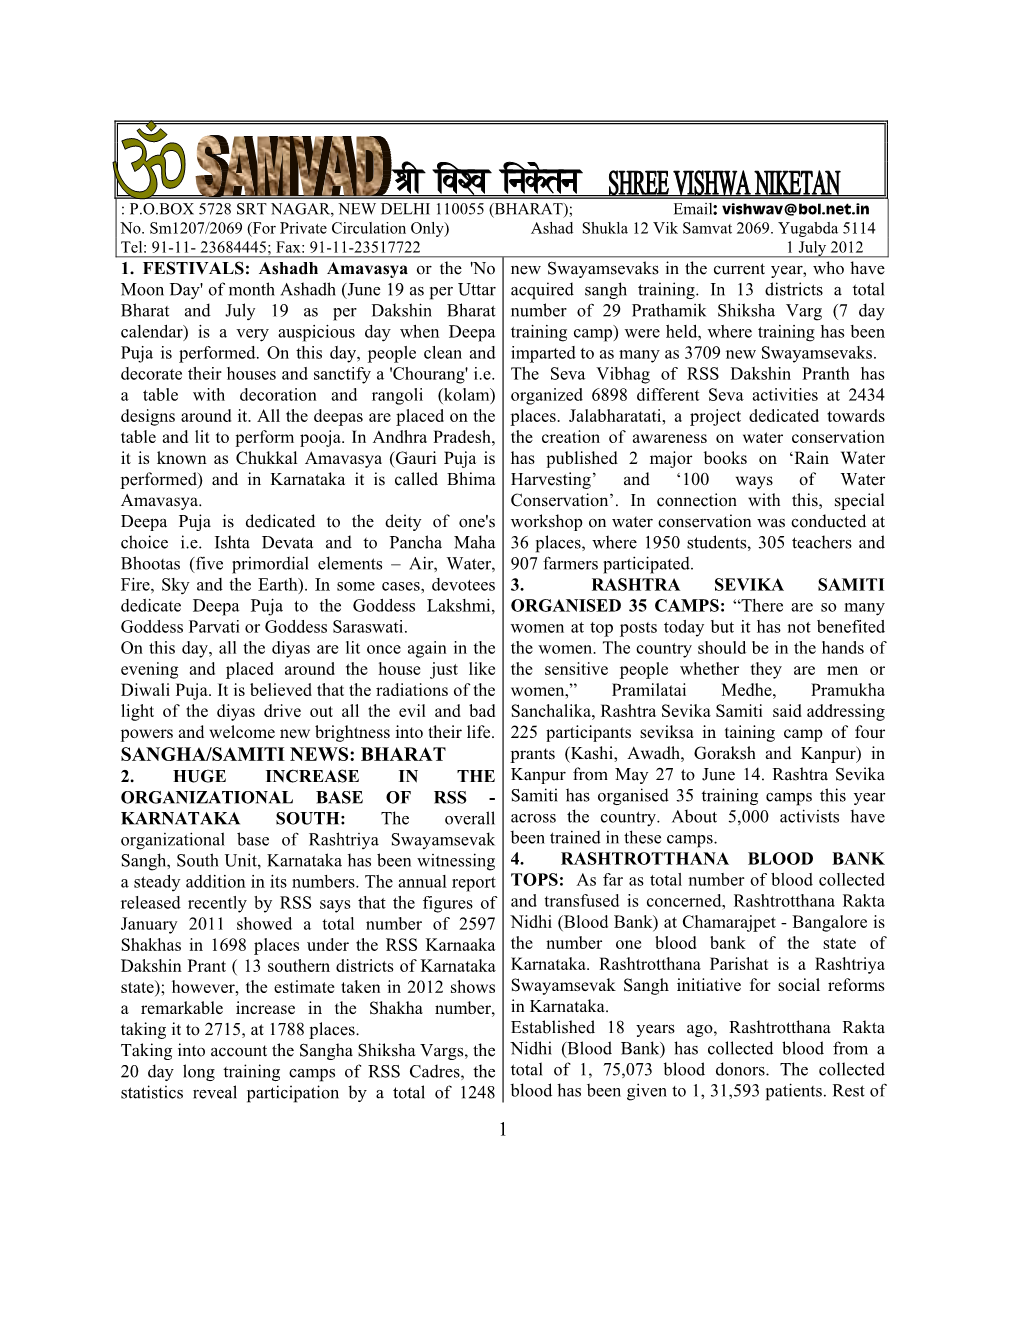 1 Sangha/Samiti News: Bharat